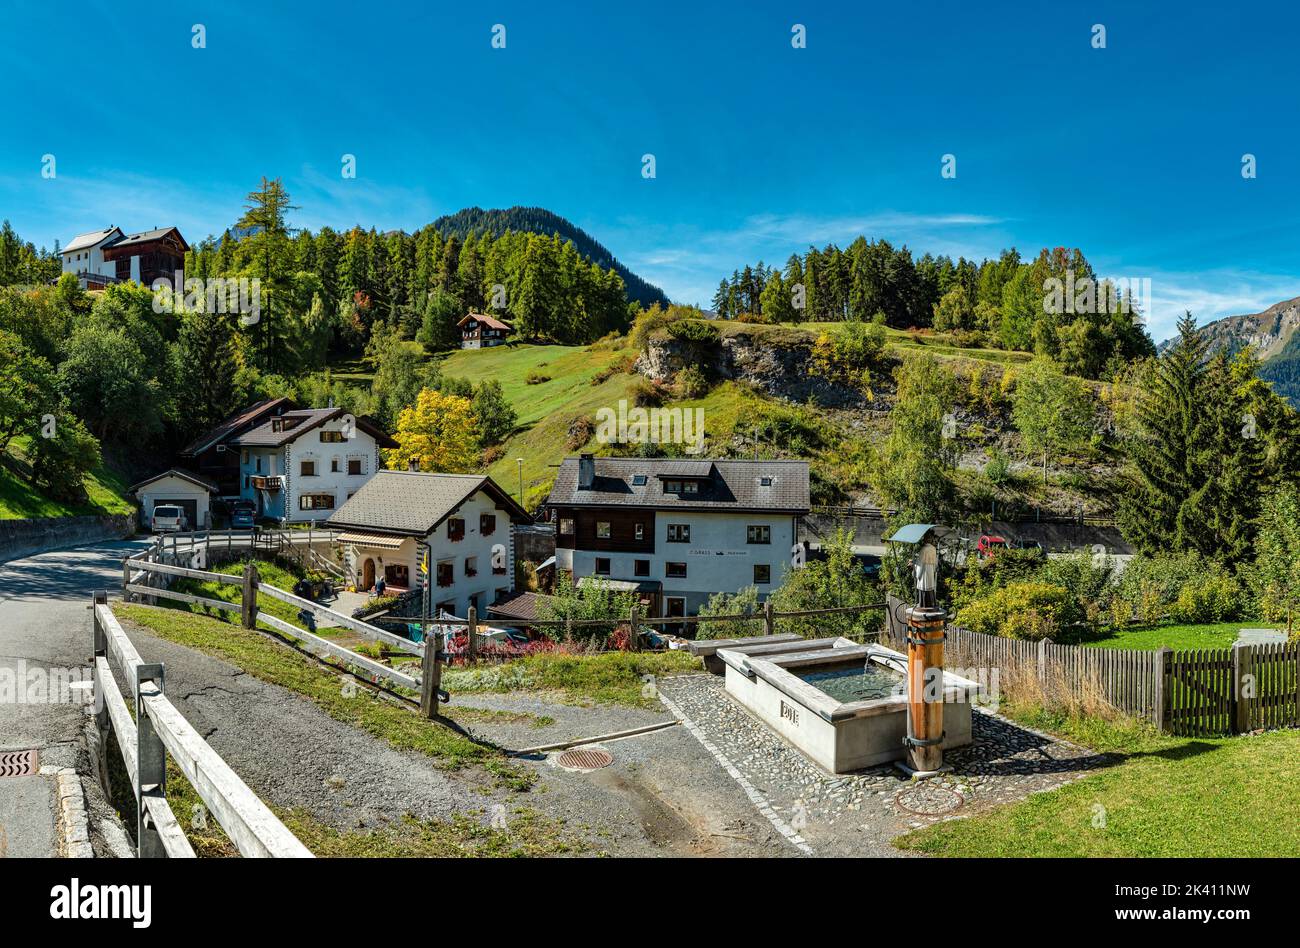 Una fuente de agua con una estatua sagrada *** Título Local *** Tarasp - Scuol, Graubünden, Suiza, ciudad, pueblo, campo, pradera, árboles, otoño, mounta Foto de stock